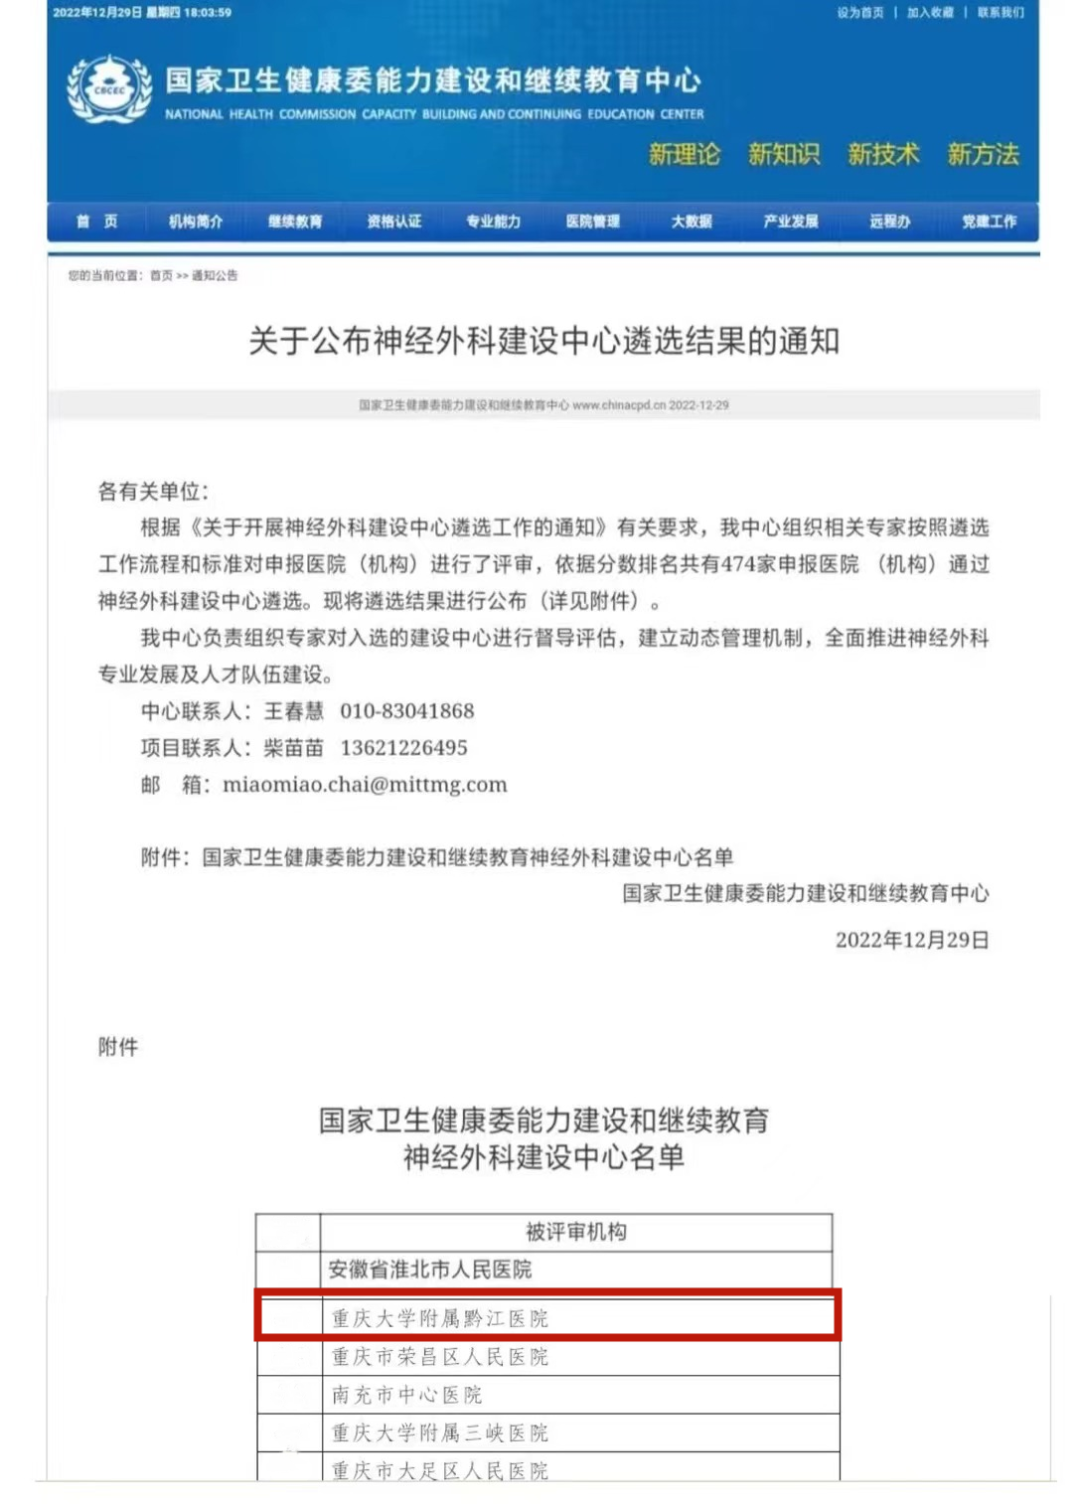 重庆市黔江中心医院神经外科入选国家「神经外科建设中心」